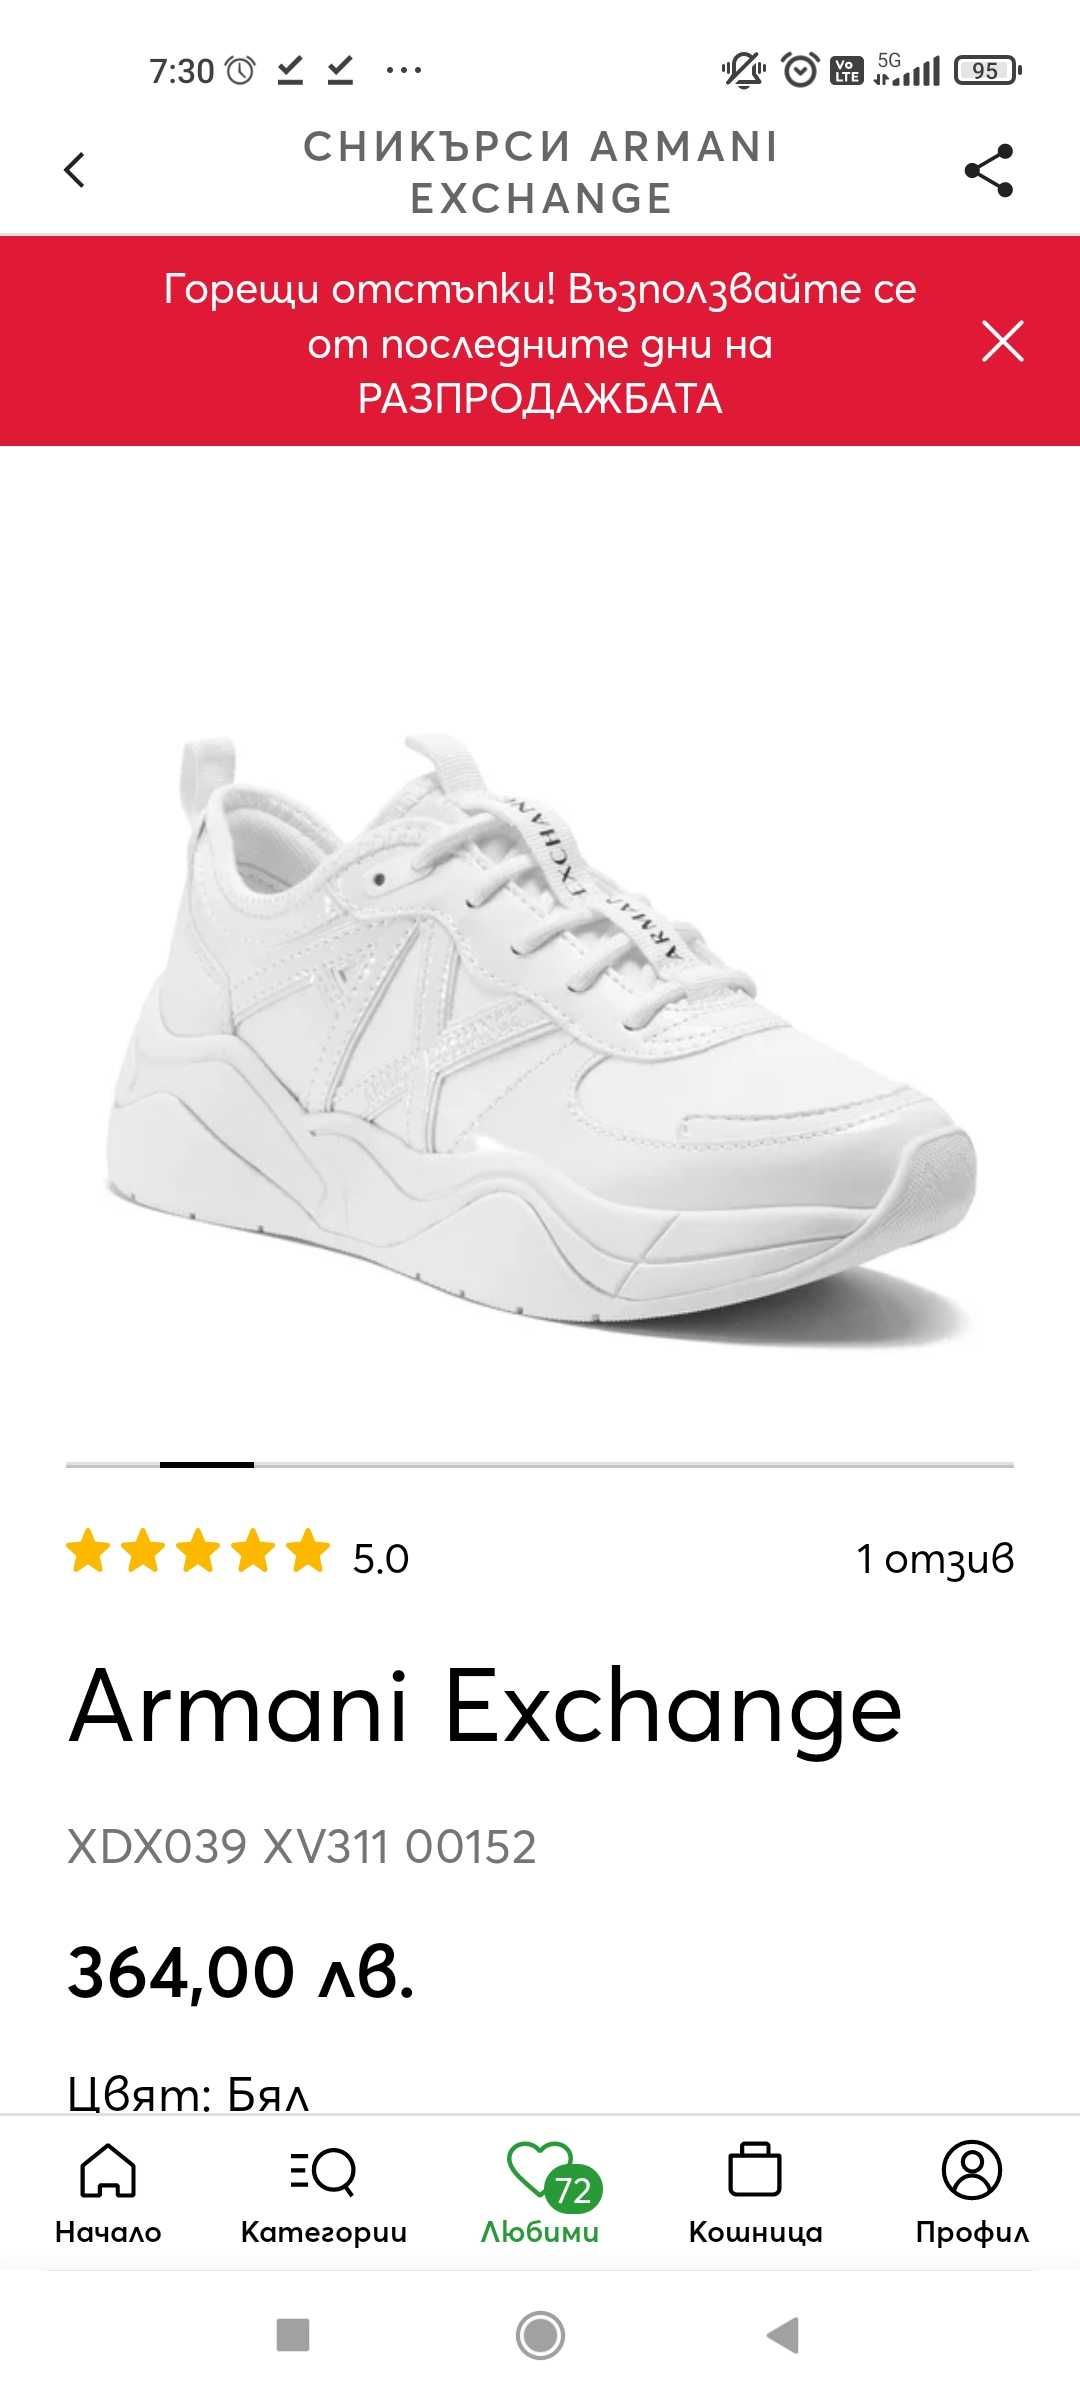 Armani exchange ПРОМОЦИЯ